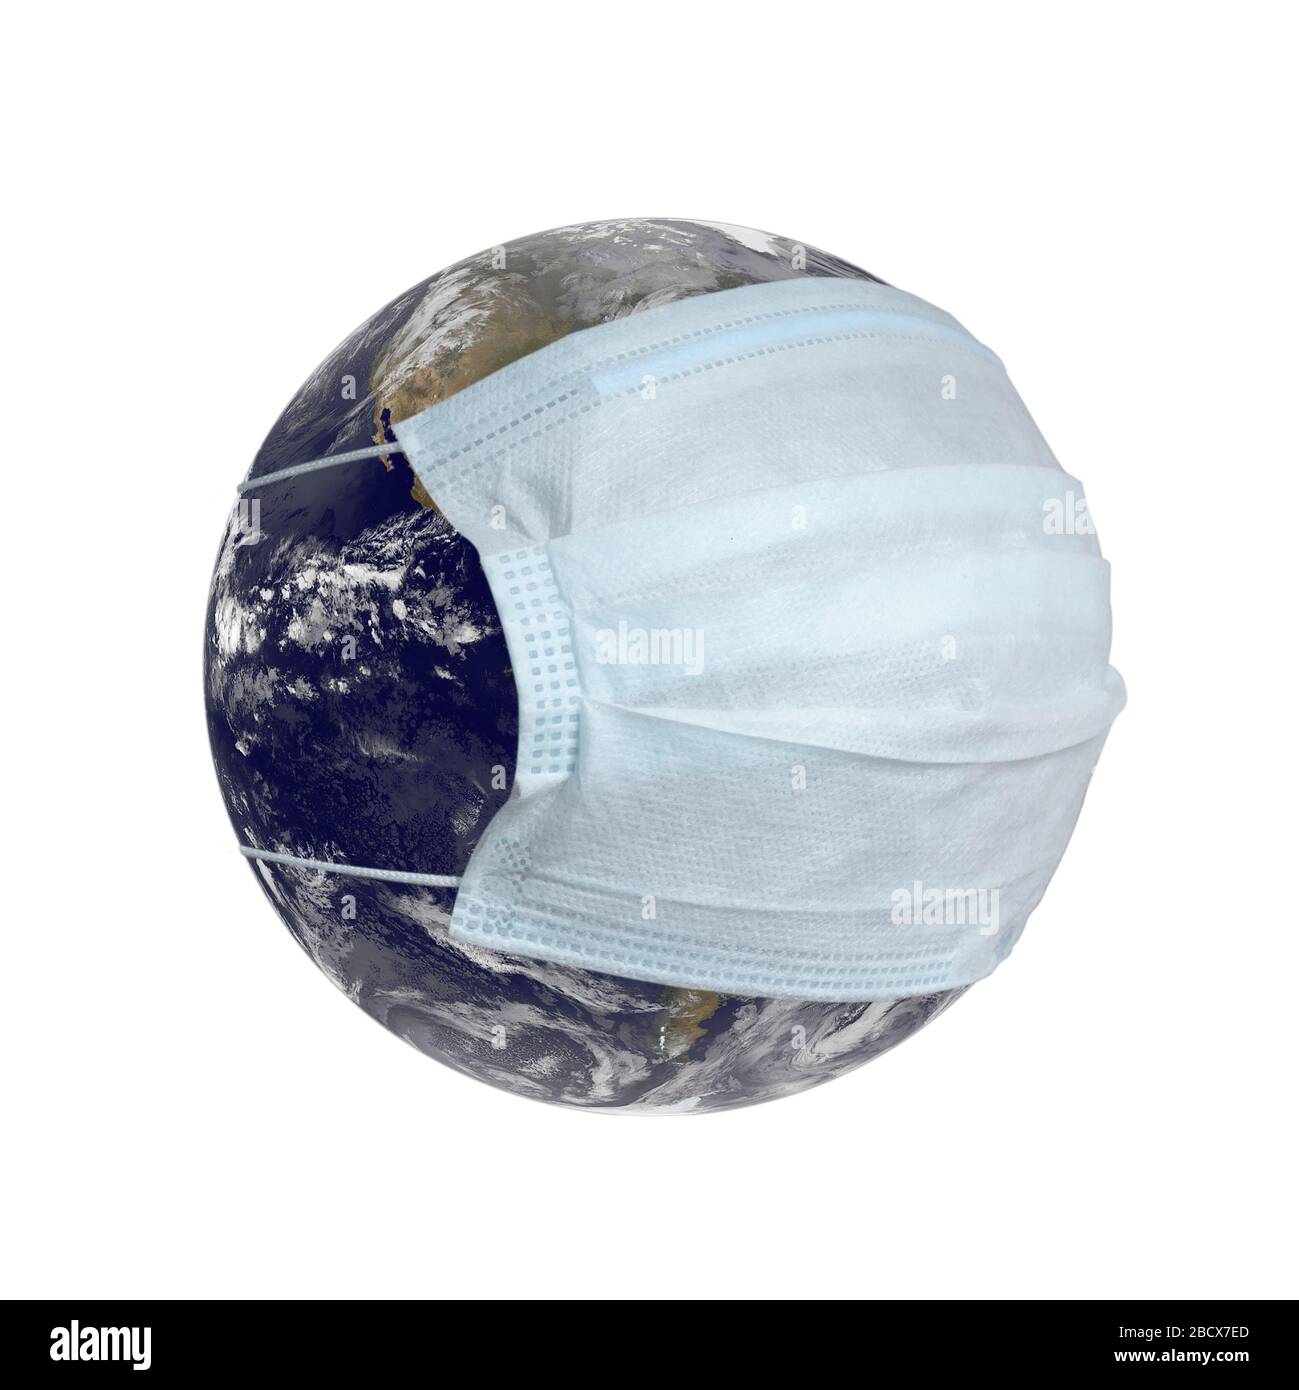 Planet Erde in einer medizinischen Maske isoliert auf weißem Hintergrund. Quarantäne und Schutz vor Coronavirus Konzept. Erdbild mit freundlicher Genehmigung der NASA. Stockfoto